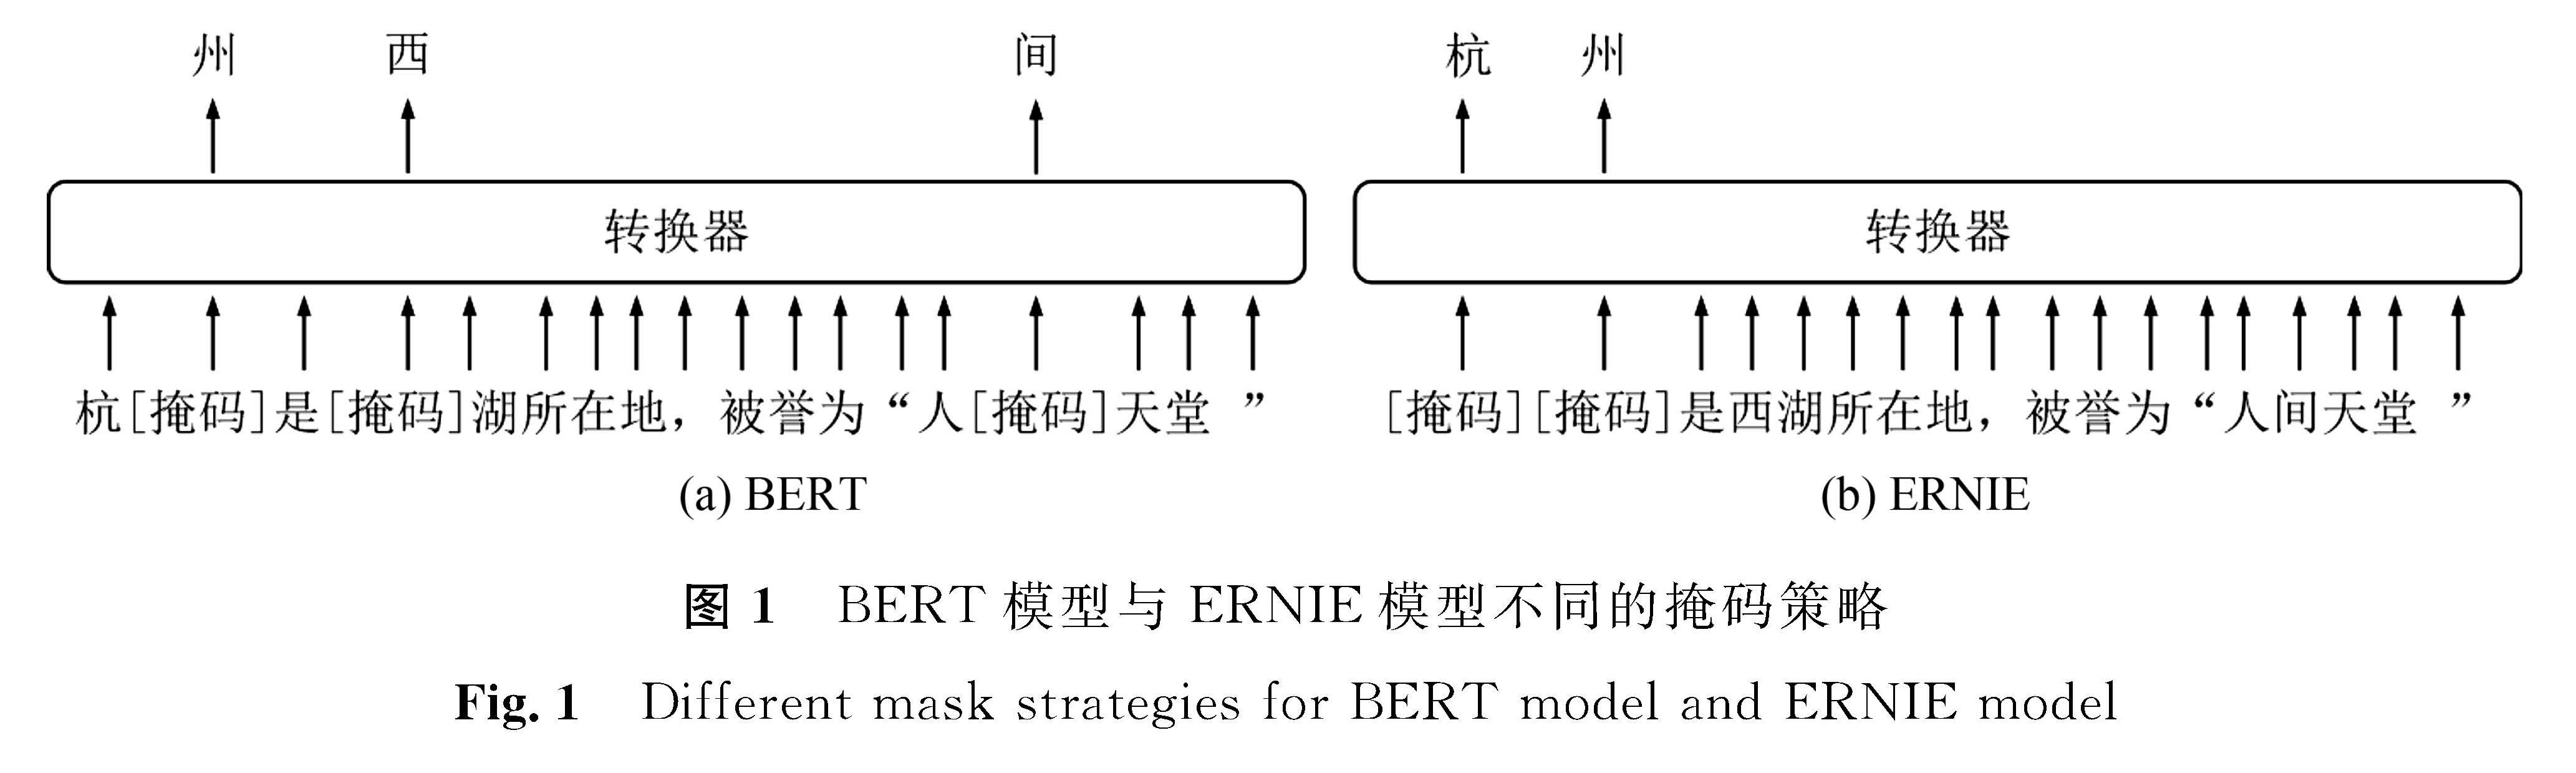 图1 BERT模型与ERNIE模型不同的掩码策略<br/>Fig.1 Different mask strategies for BERT model and ERNIE model